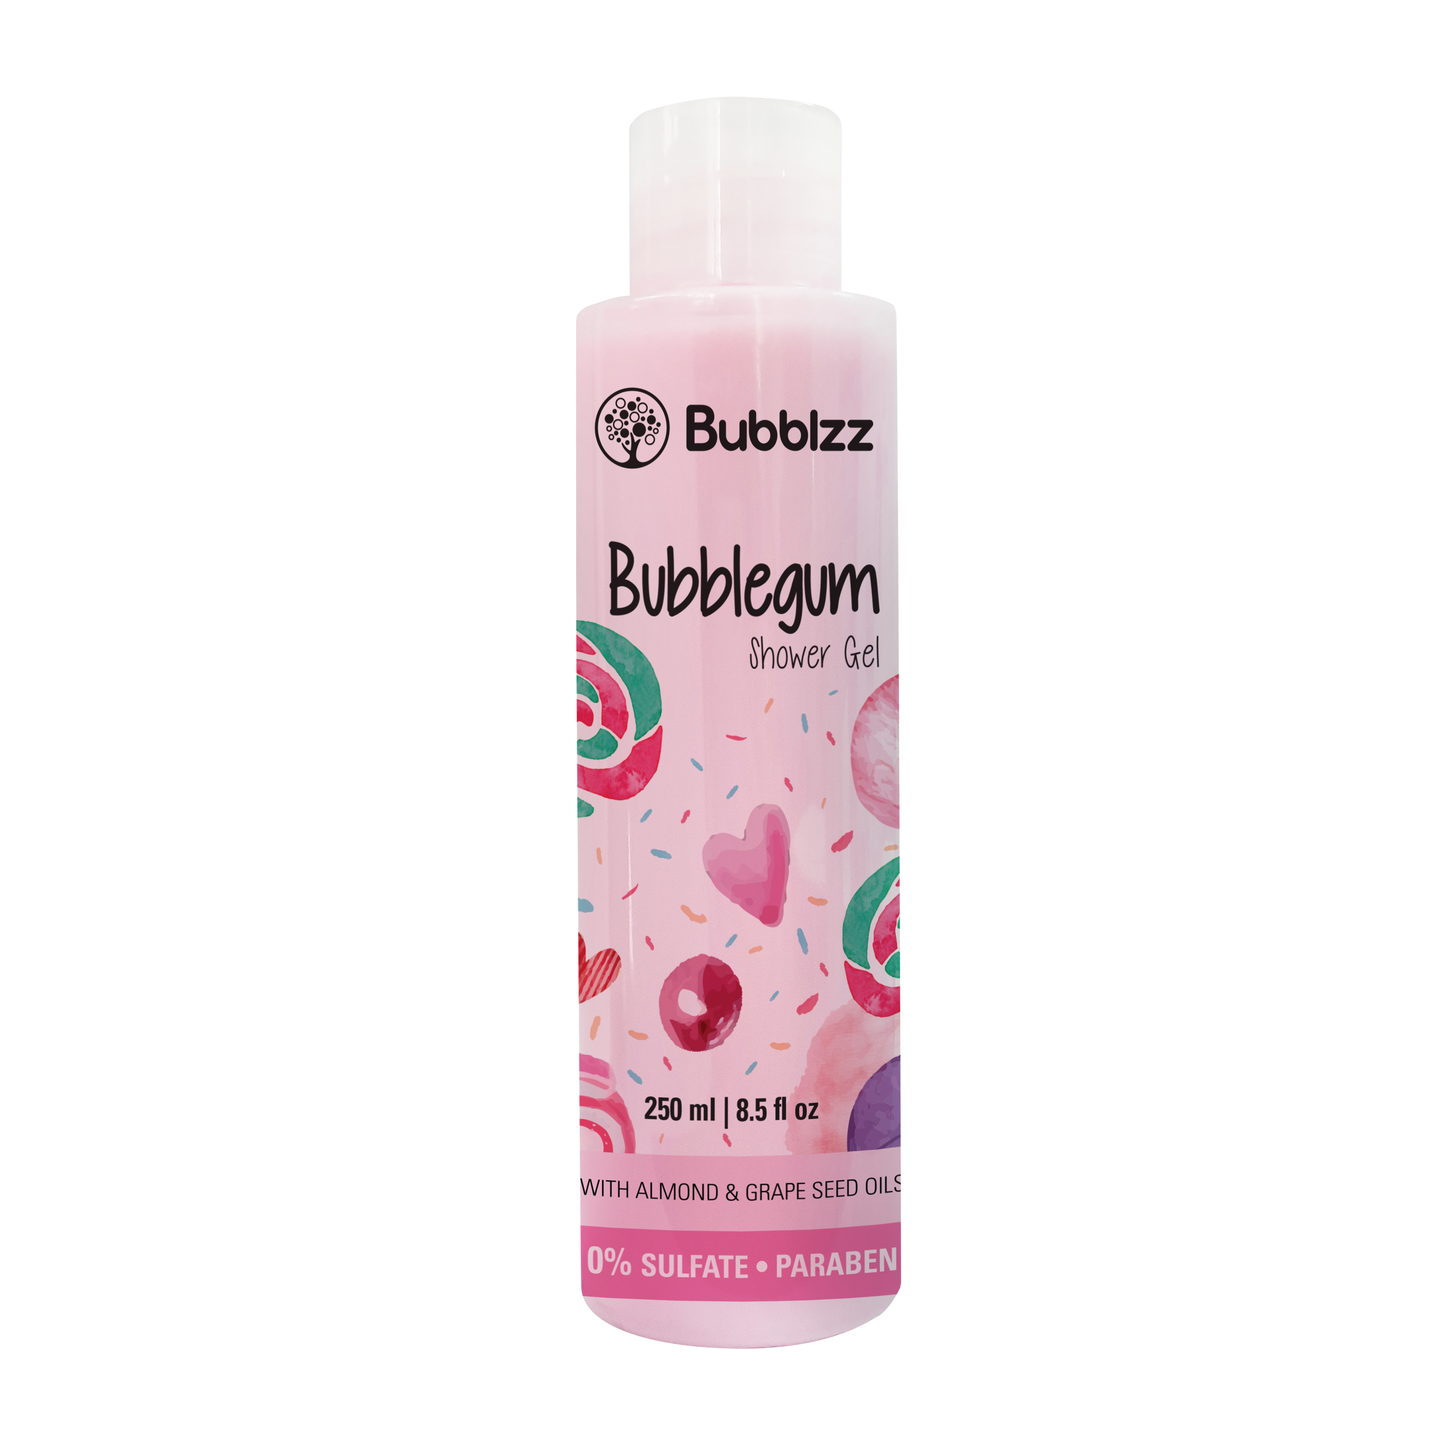 Bubblegum Shower Gel - 250 ml